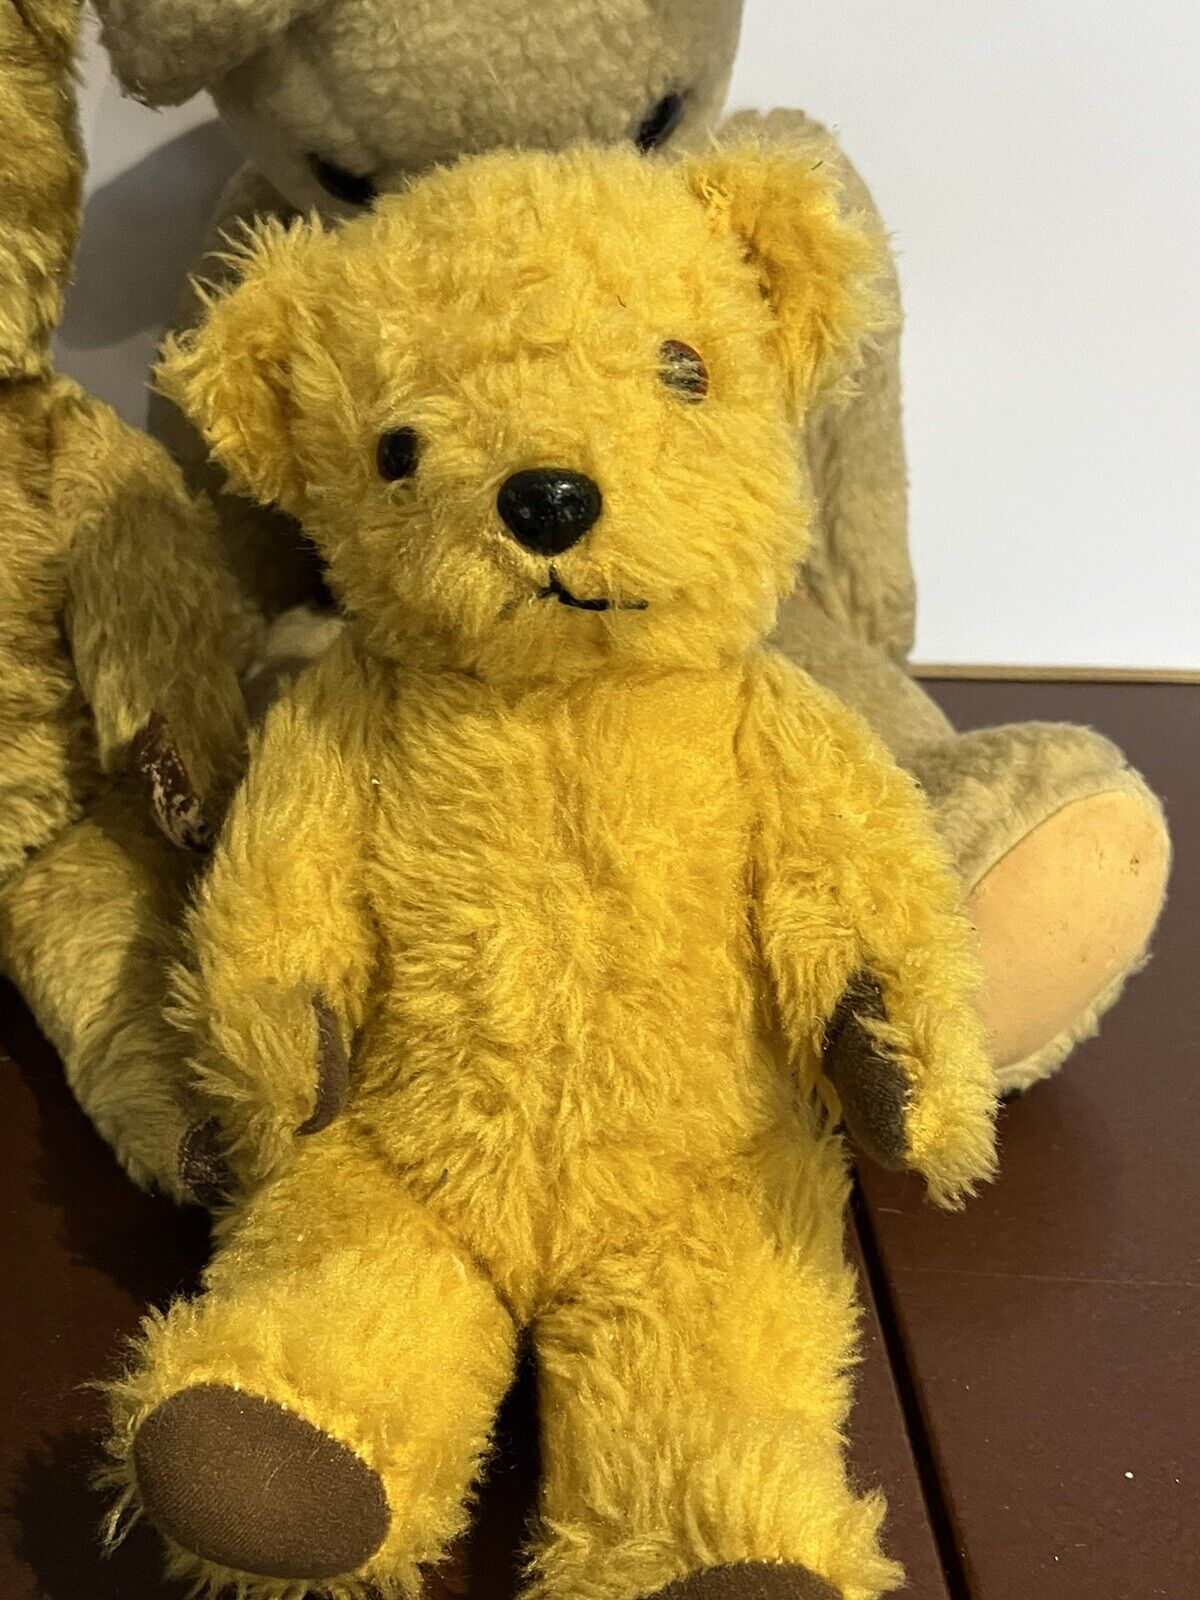 Antique Teddy Bear Collection